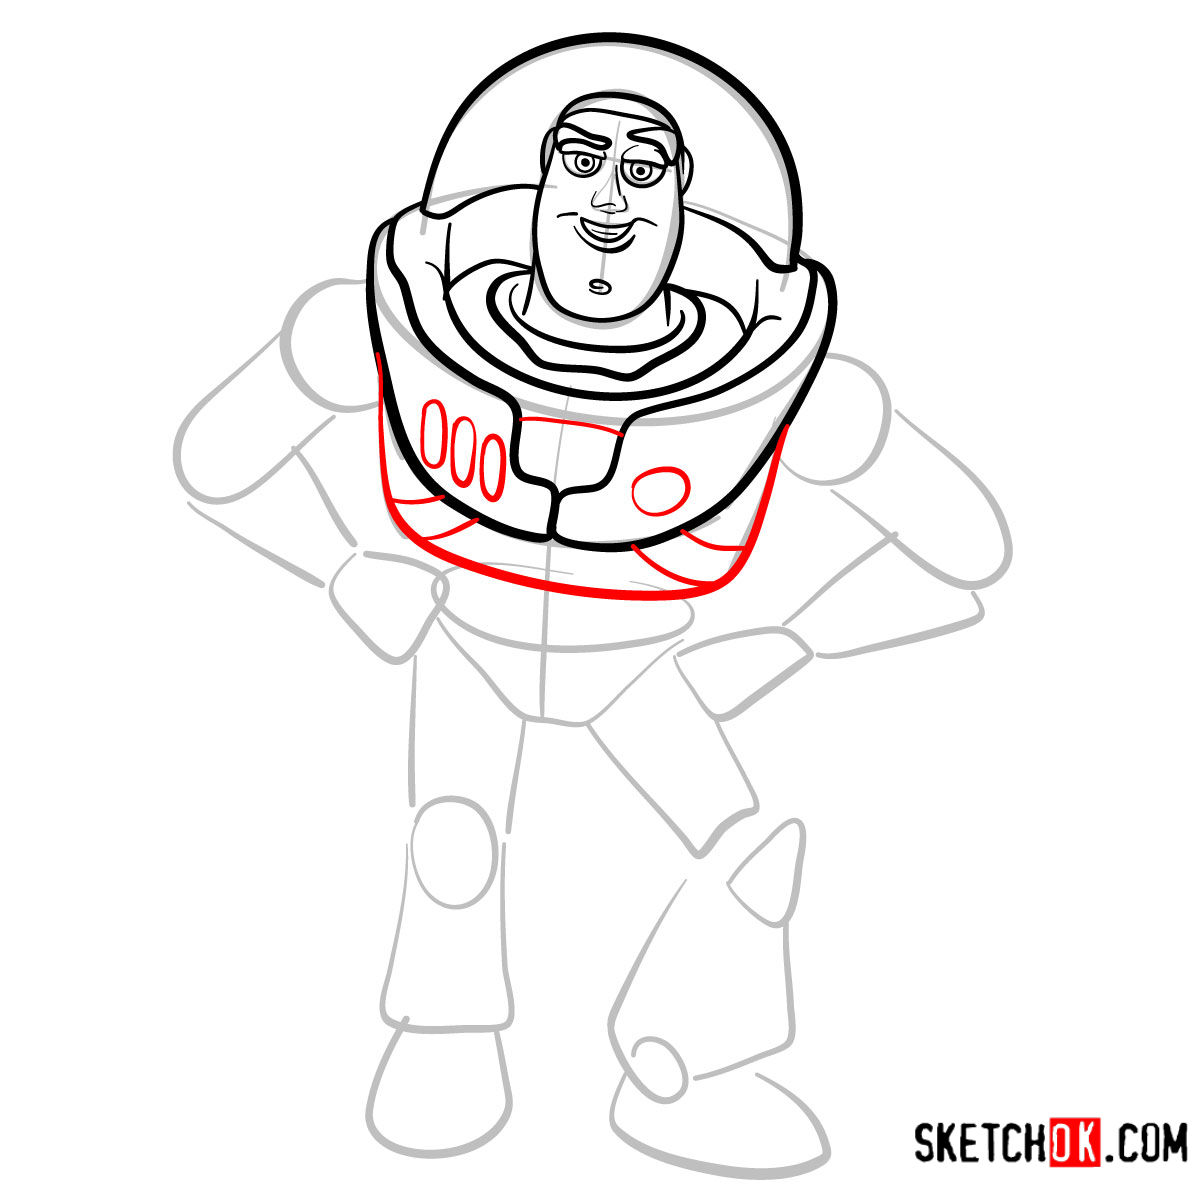 How to draw Buzz Lightyear | Toy Story - step 07